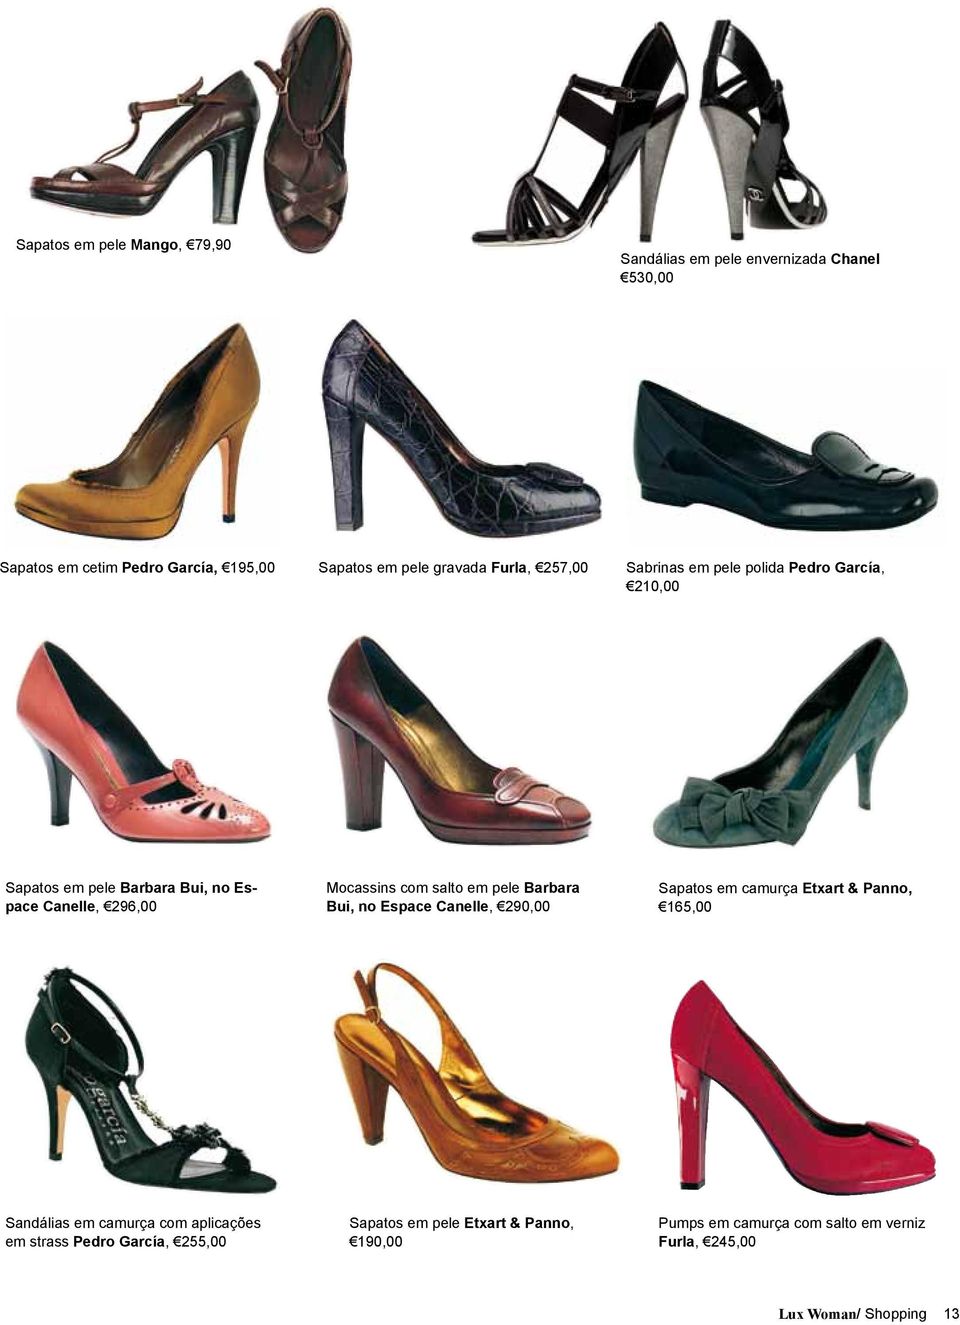 em pele Barbara Bui, no Espace Canelle, 290,00 Sapatos em camurça Etxart & Panno, 165,00 Sandálias em camurça com aplicações em strass